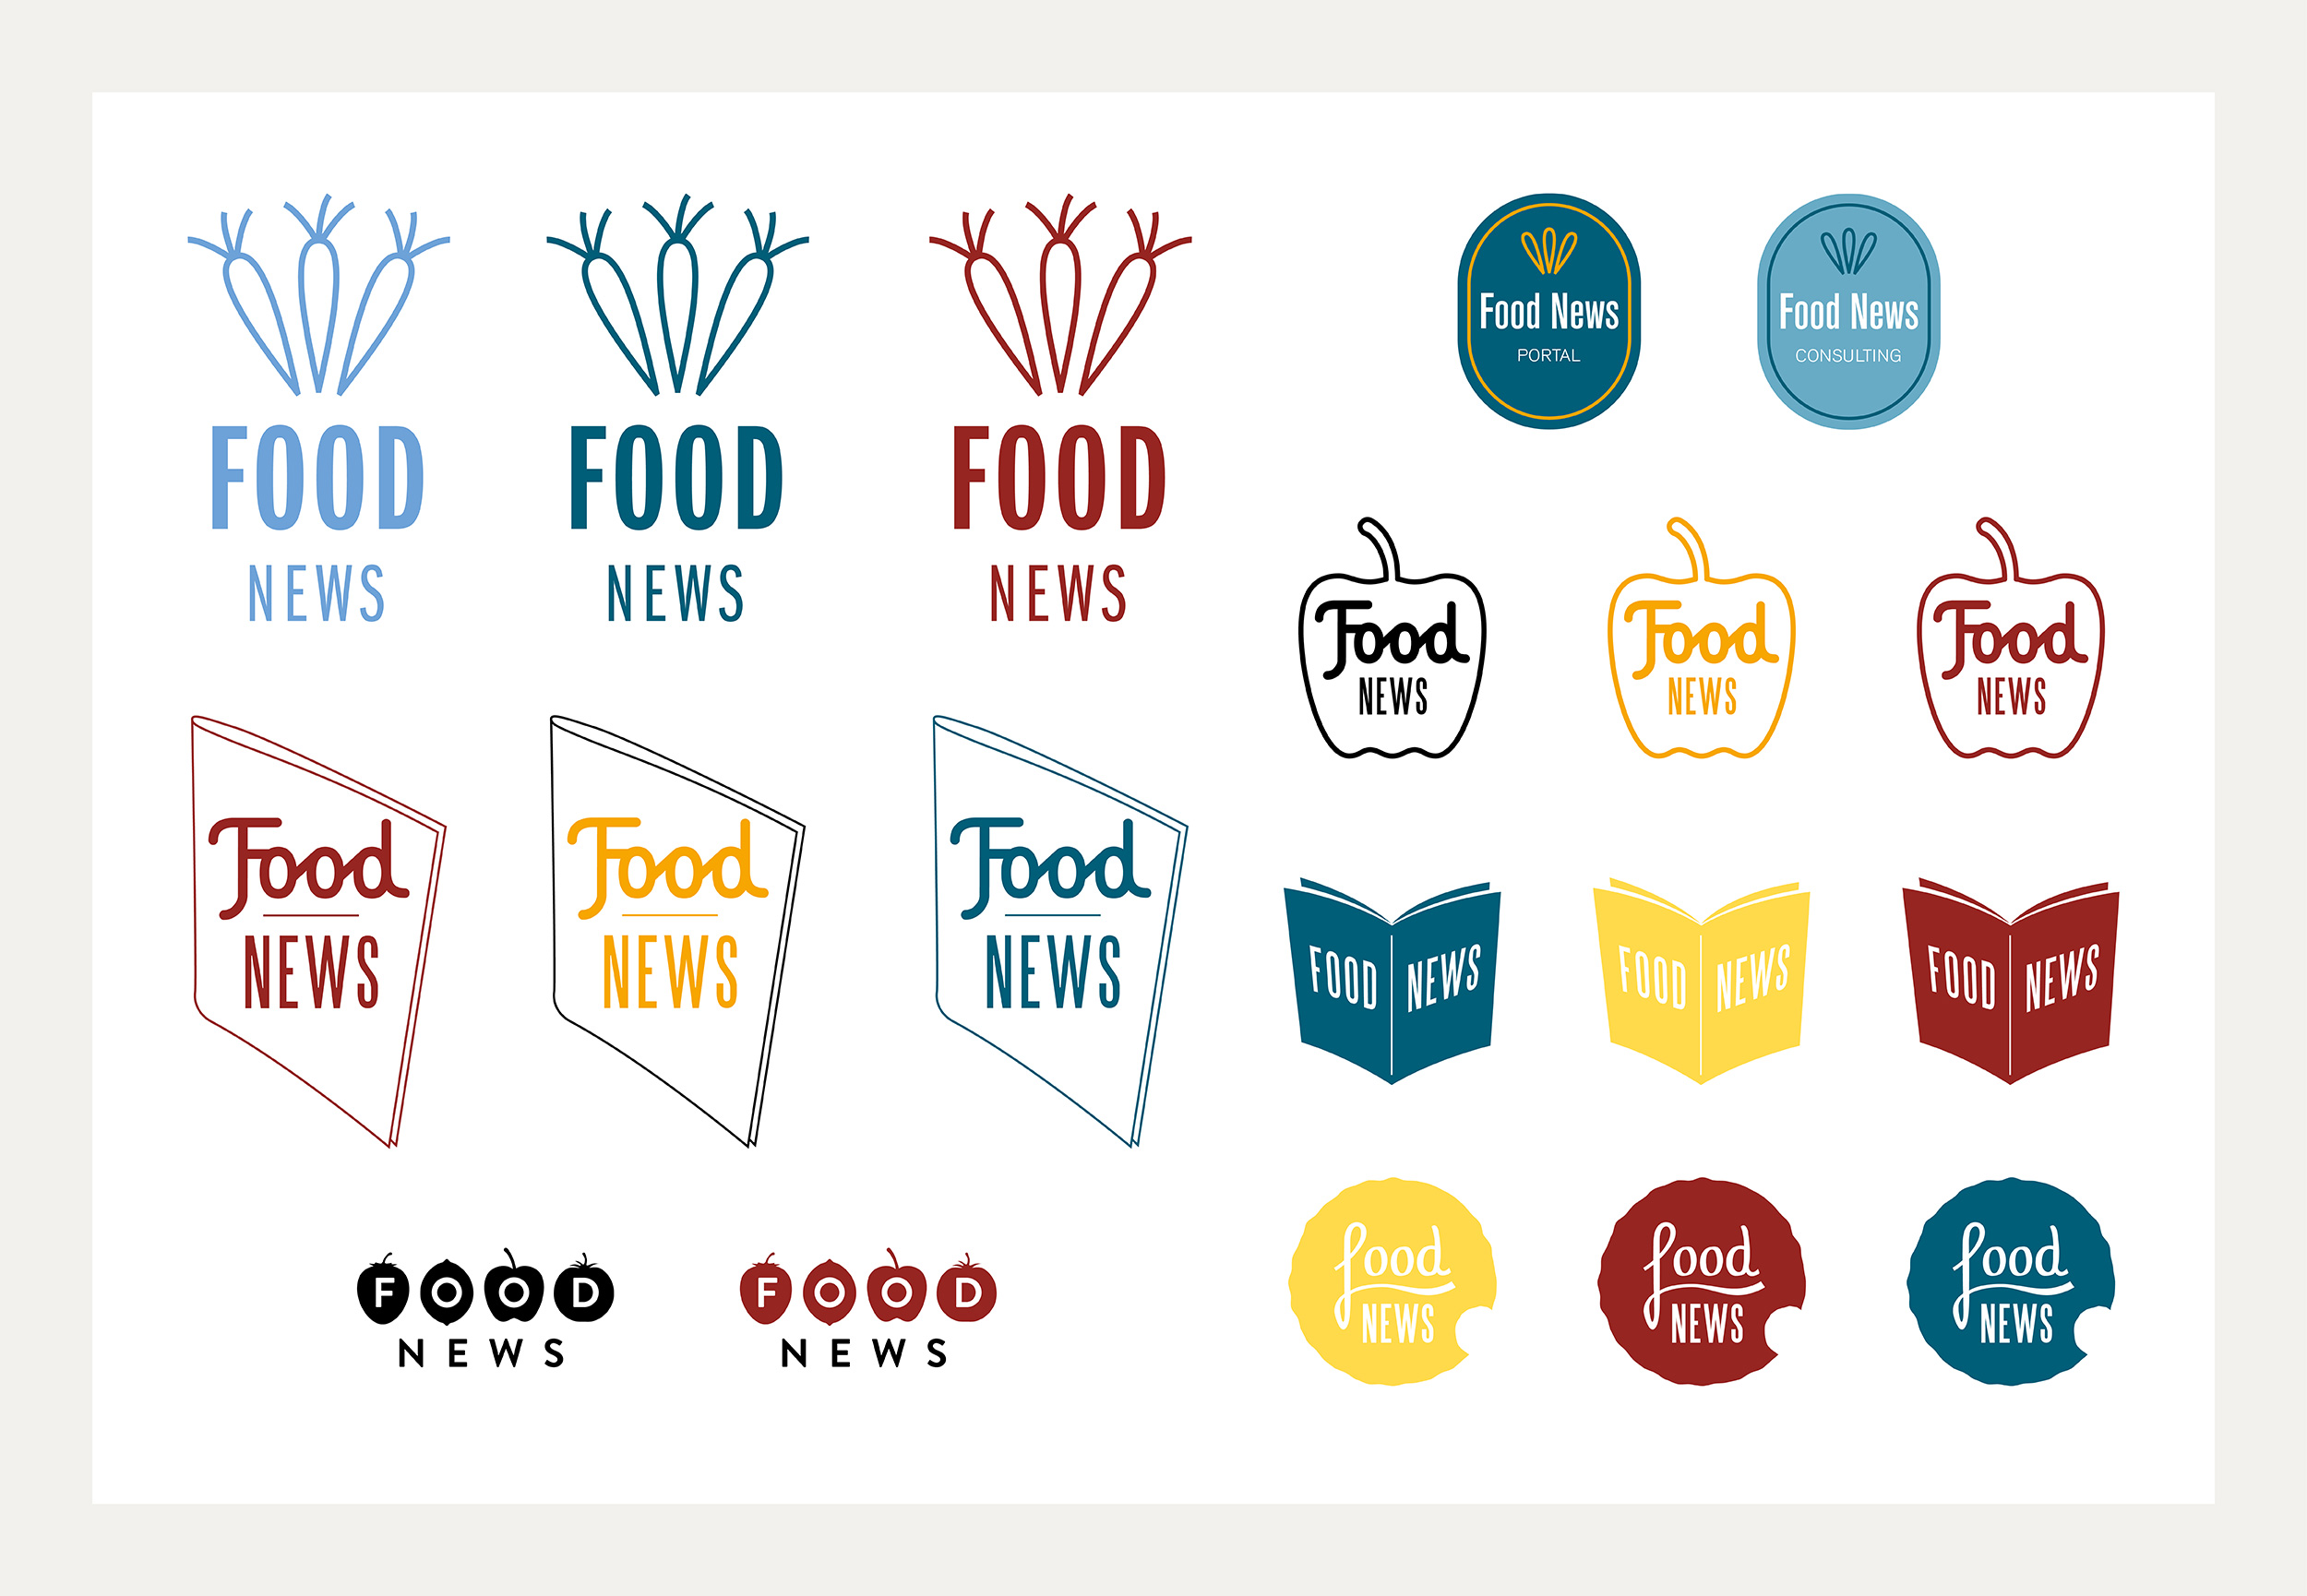 Entwürfe für ein Redesign des Ernähungsportals Food News aus der Schweiz.